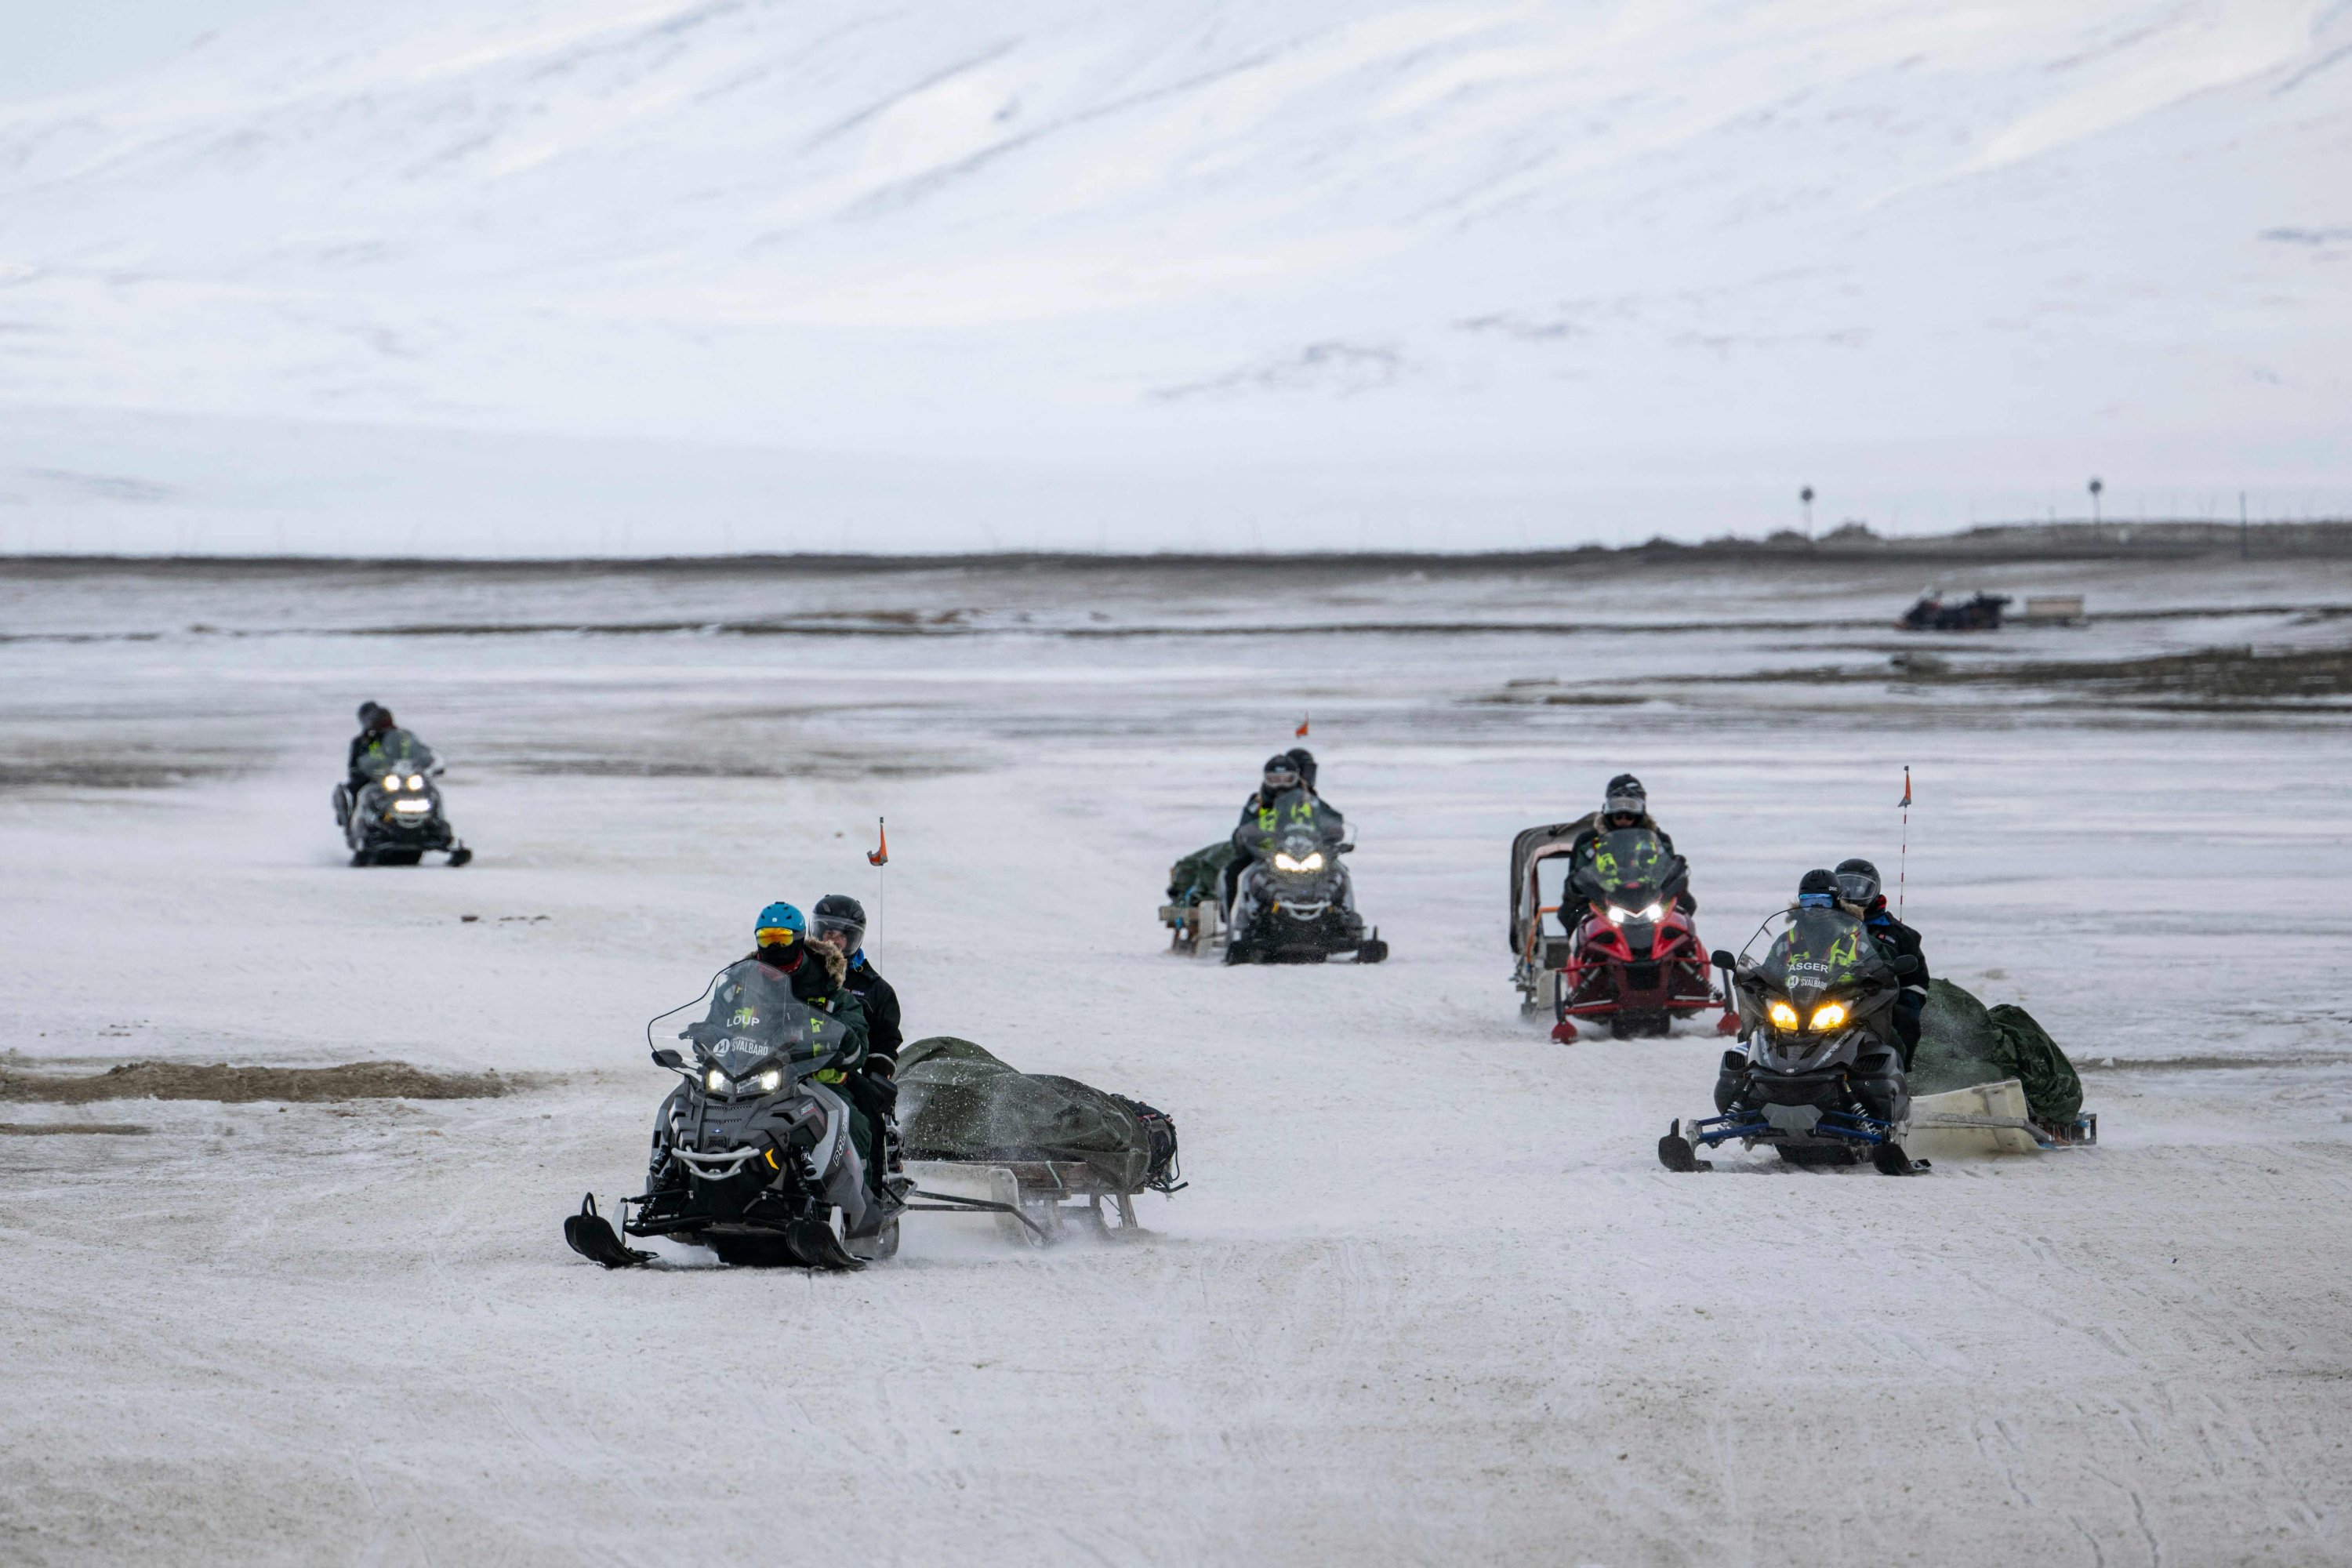 Turis kembali ke Longyearbyen setelah tur dengan mobil salju, pulau Spitsbergen, di Kepulauan Svalbard, Norwegia utara, 8 Mei 2022. (AFP Photo)